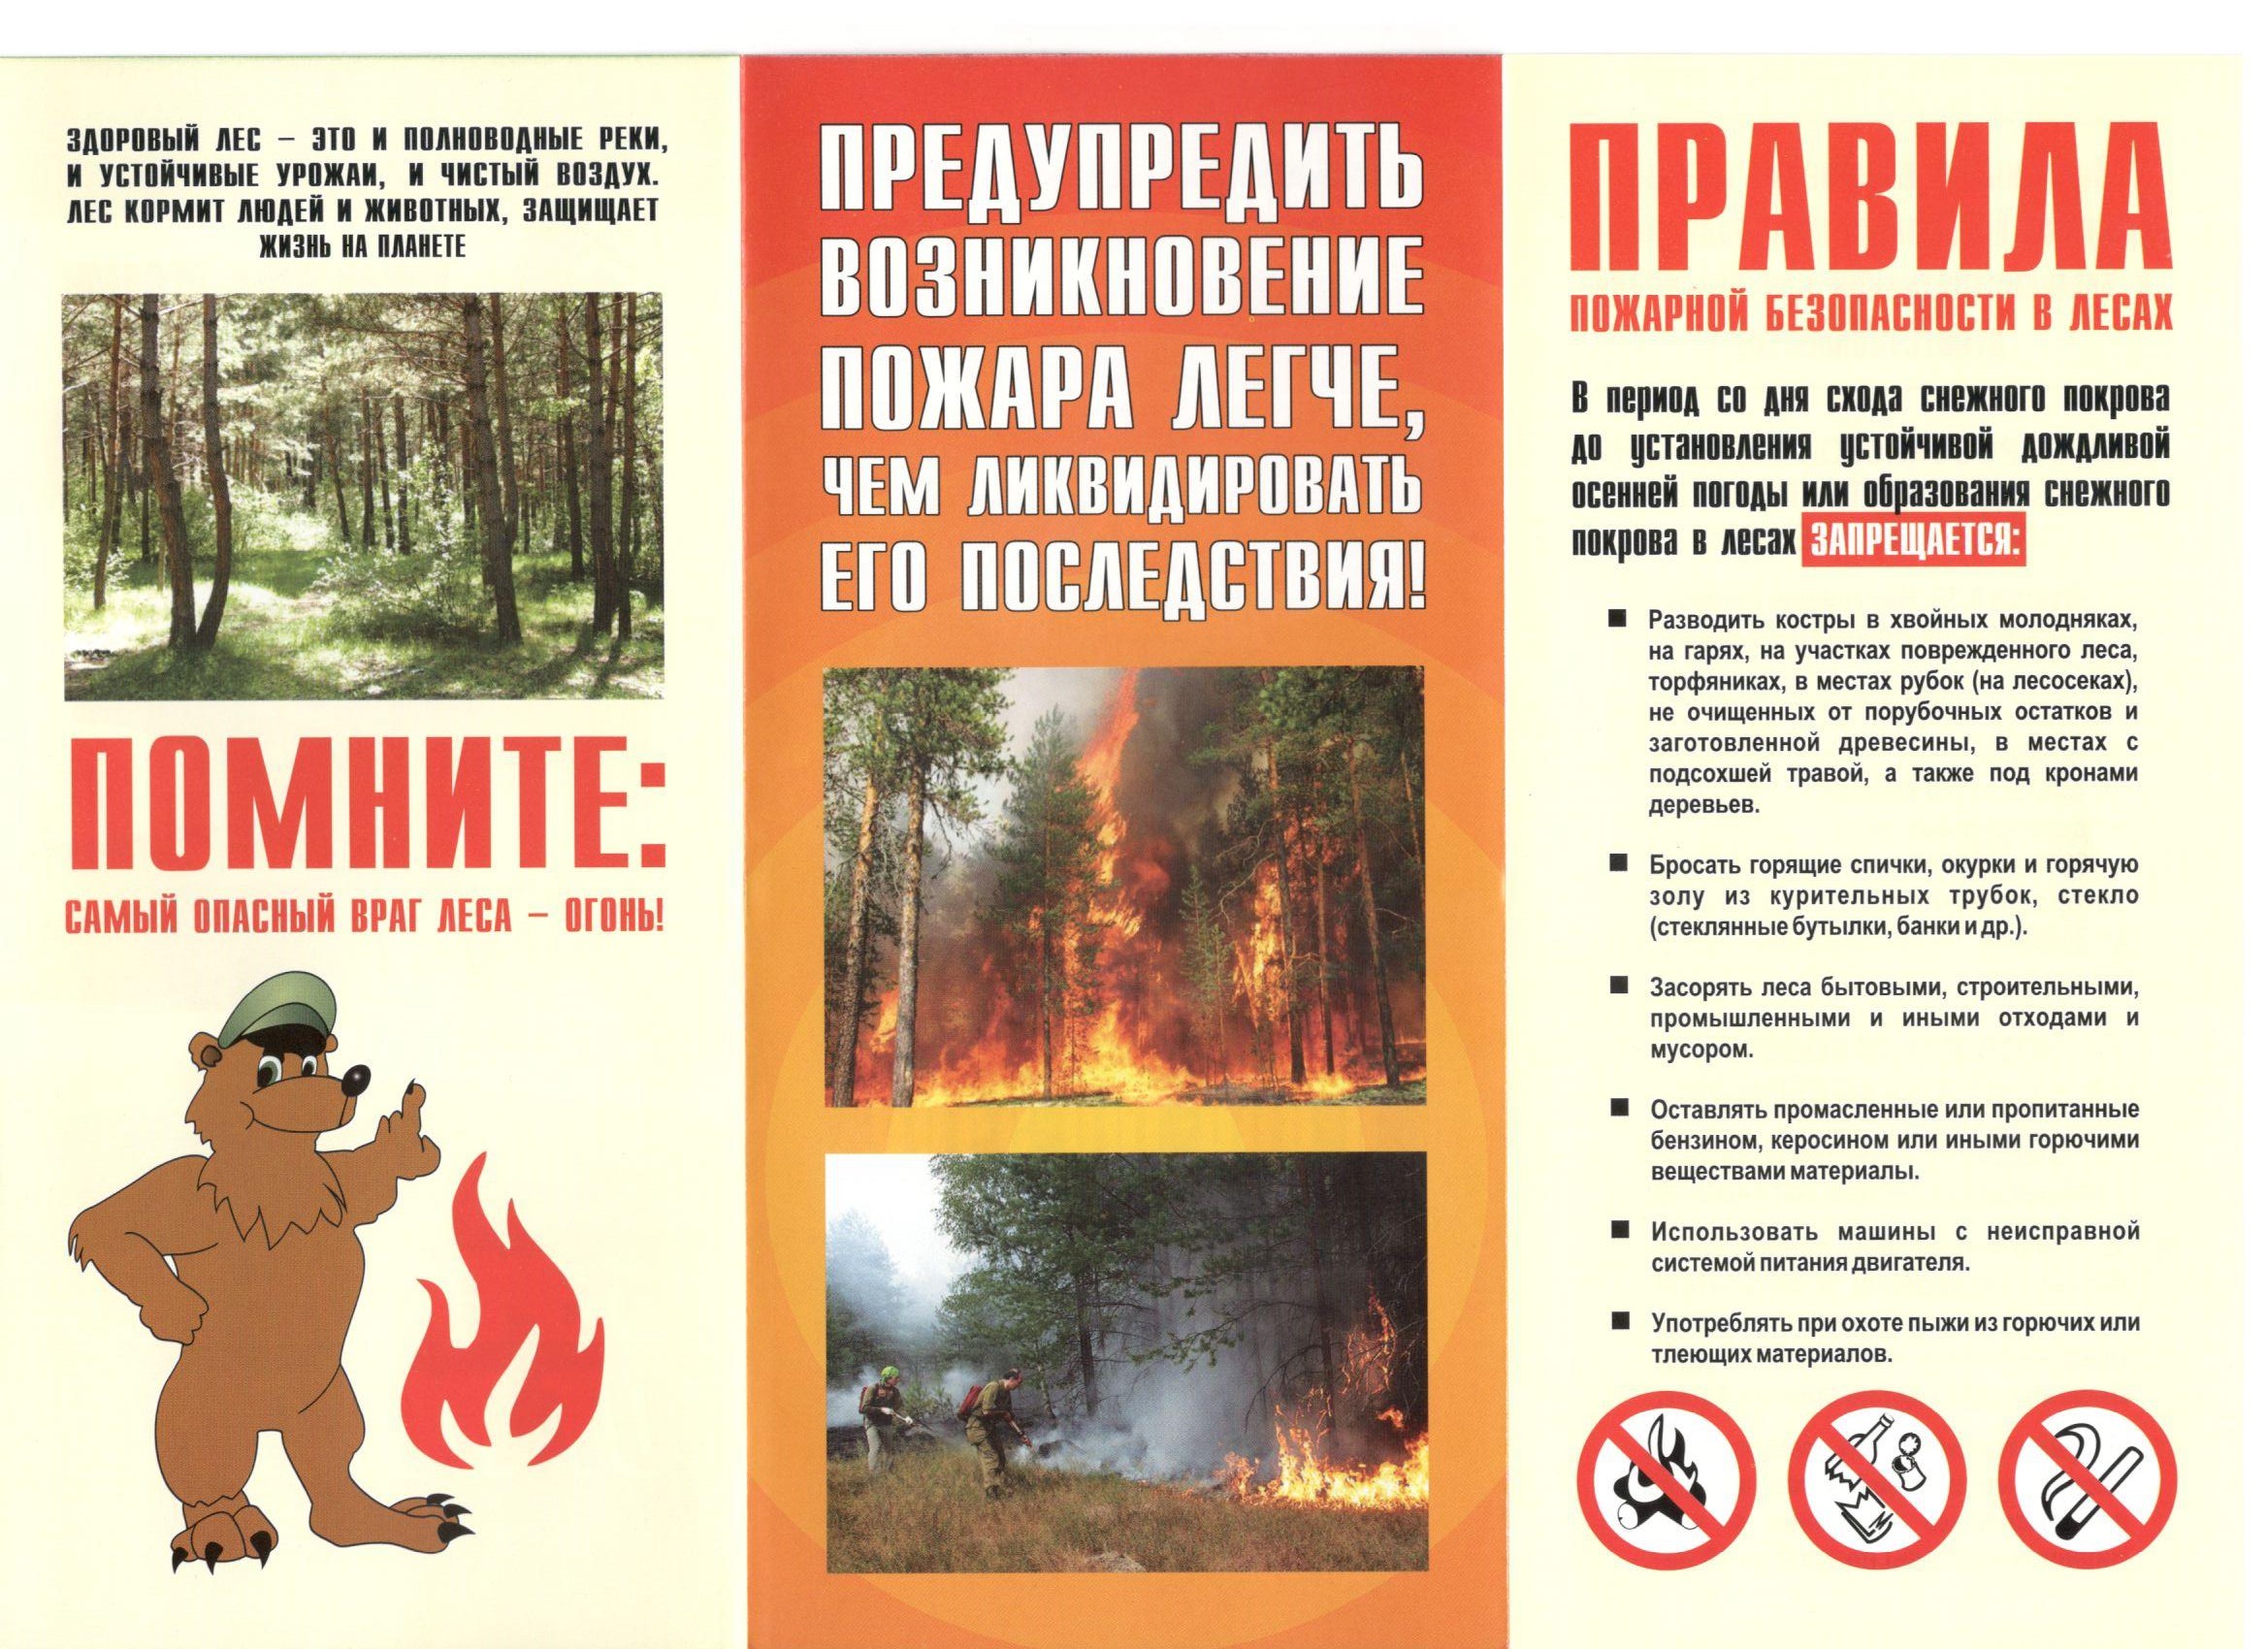 Дистанционные методы мониторинга и предупреждения лесных пожаров